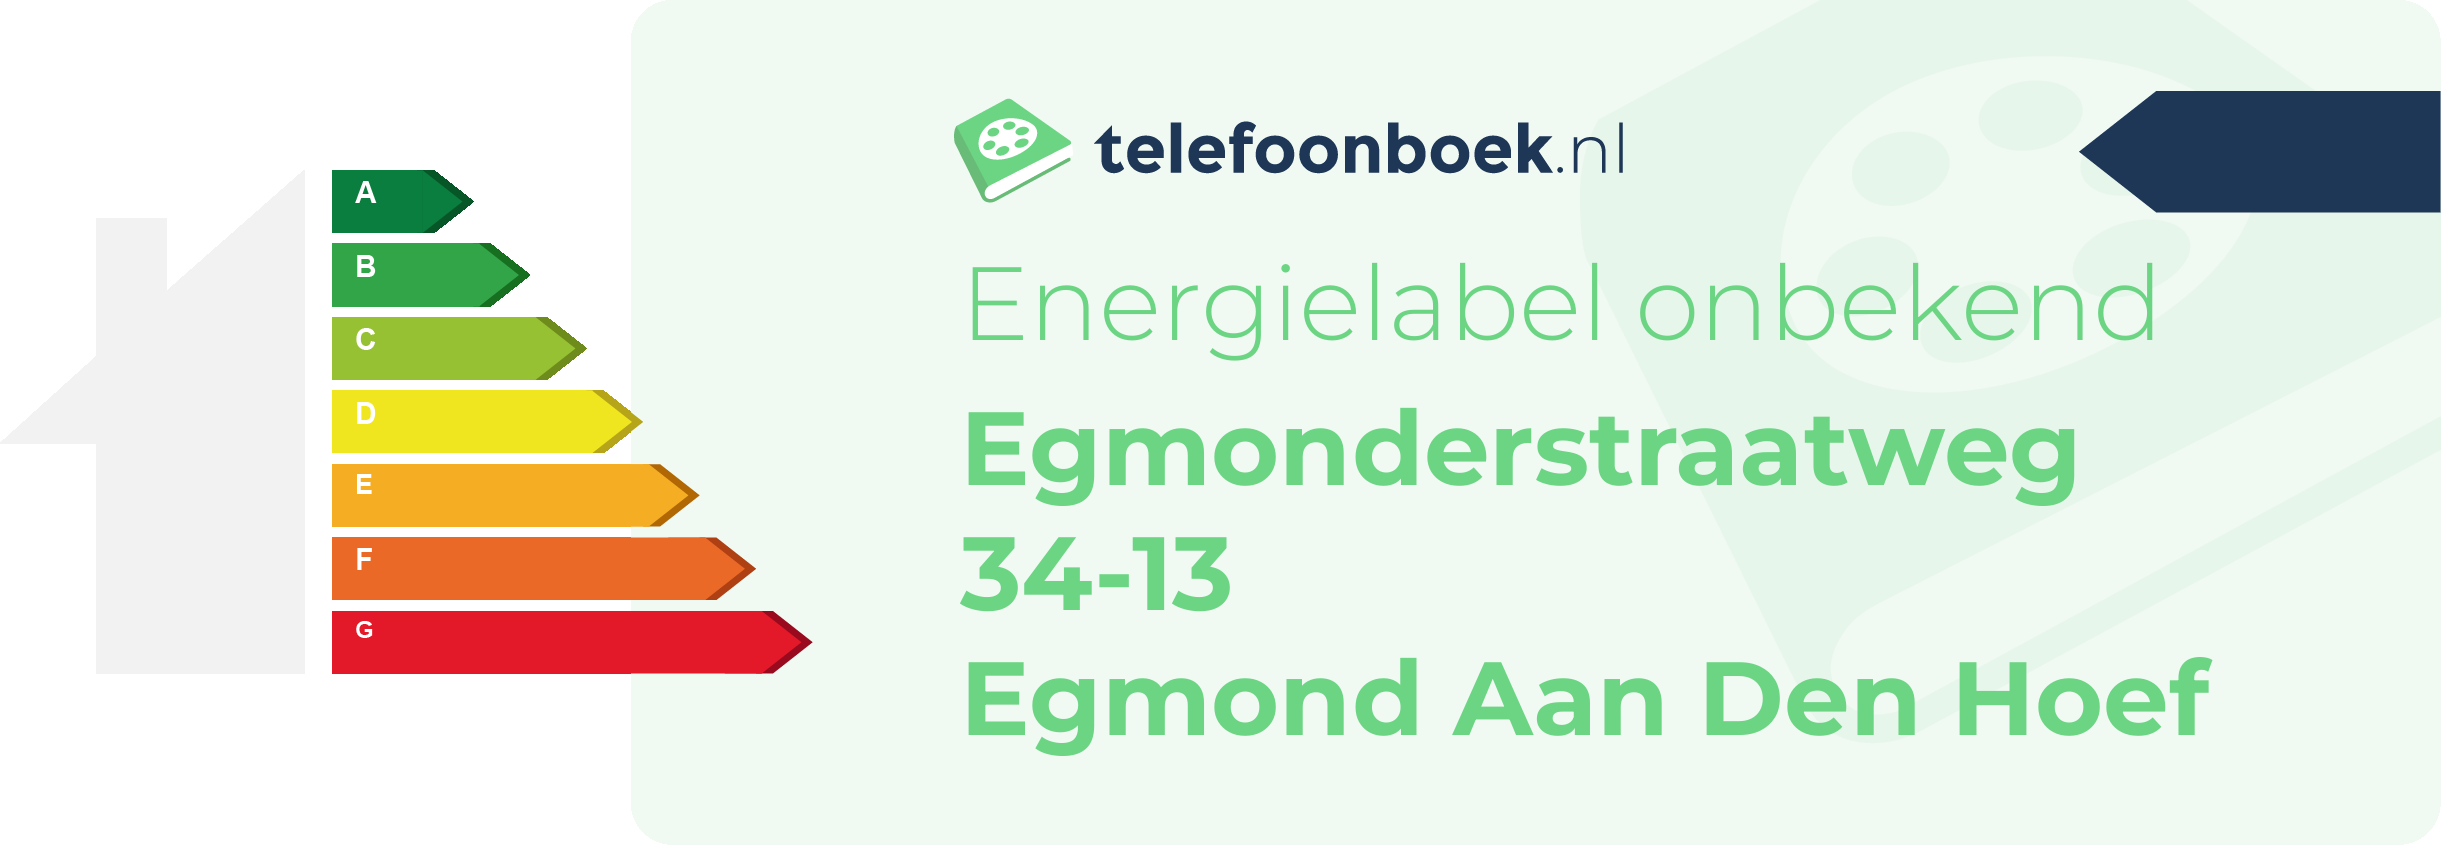 Energielabel Egmonderstraatweg 34-13 Egmond Aan Den Hoef